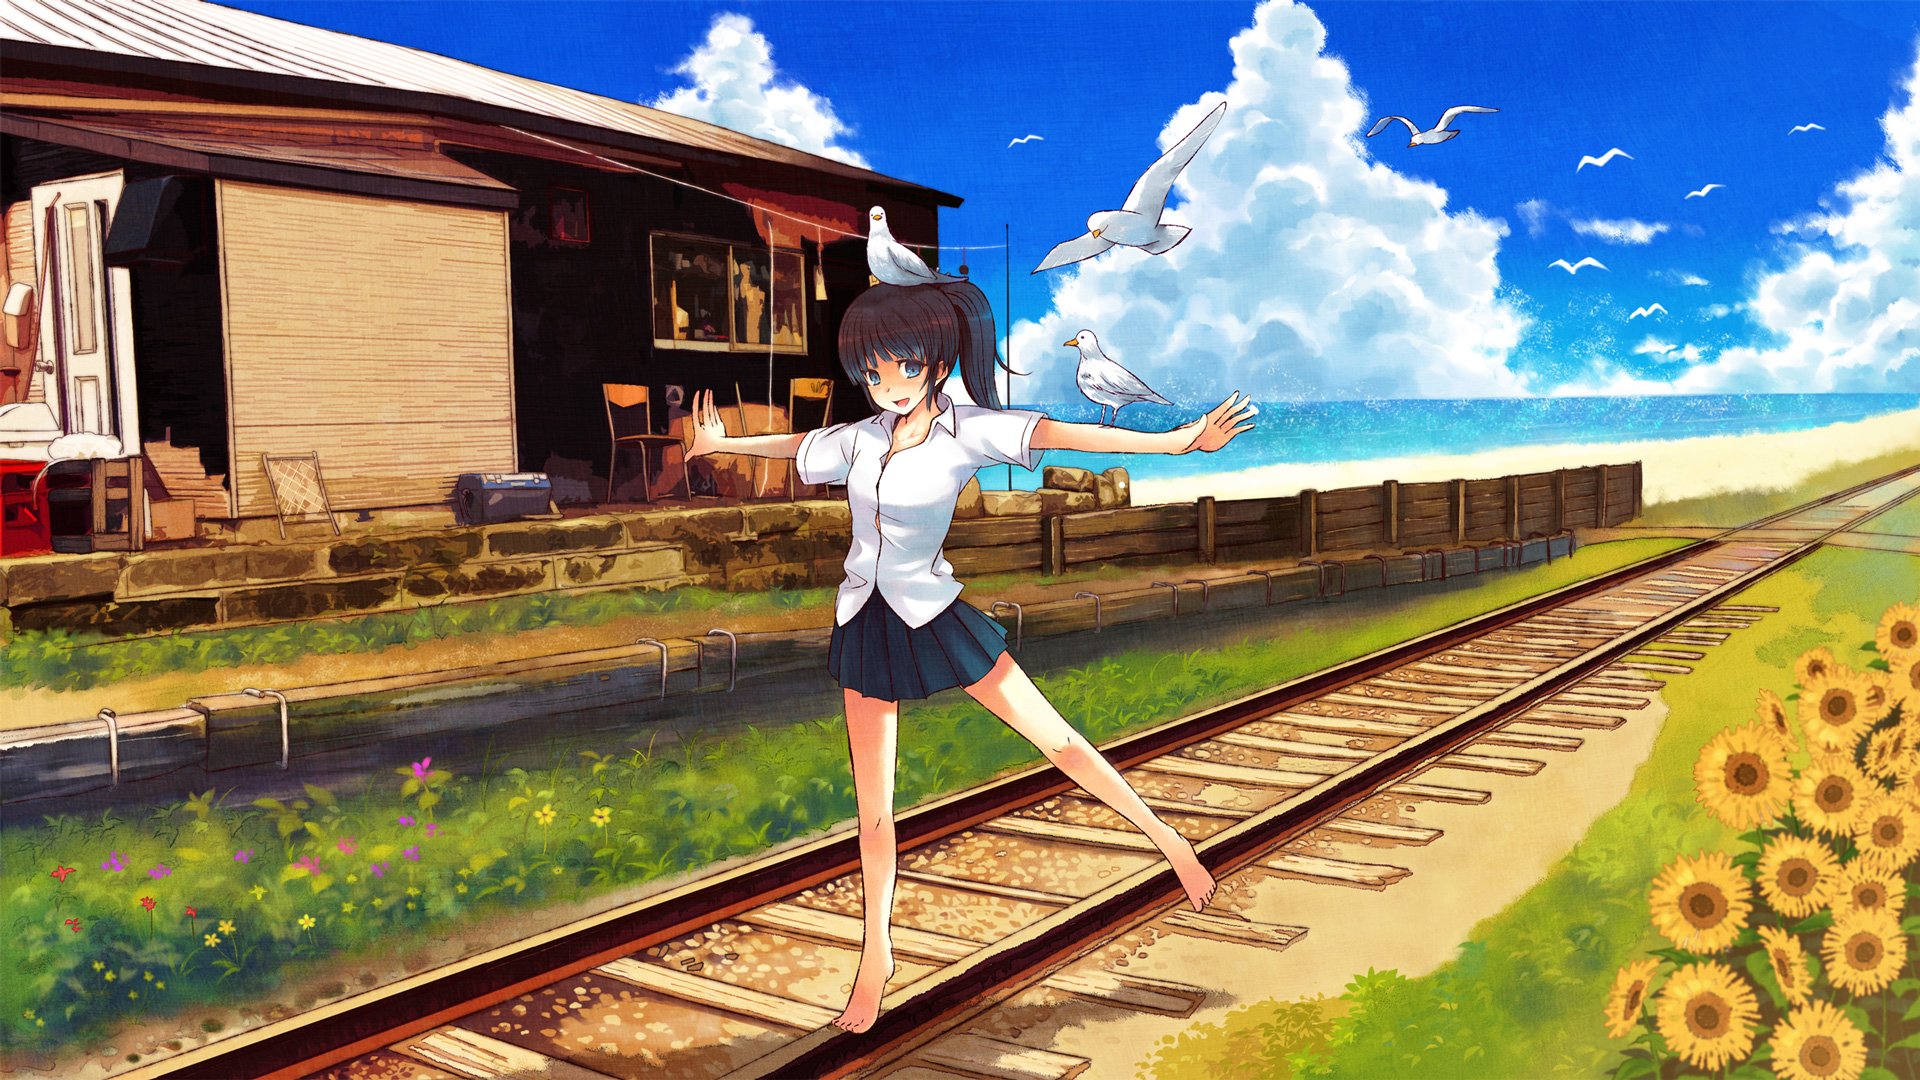 Cute Anime Backgrounds HD Free download  PixelsTalkNet